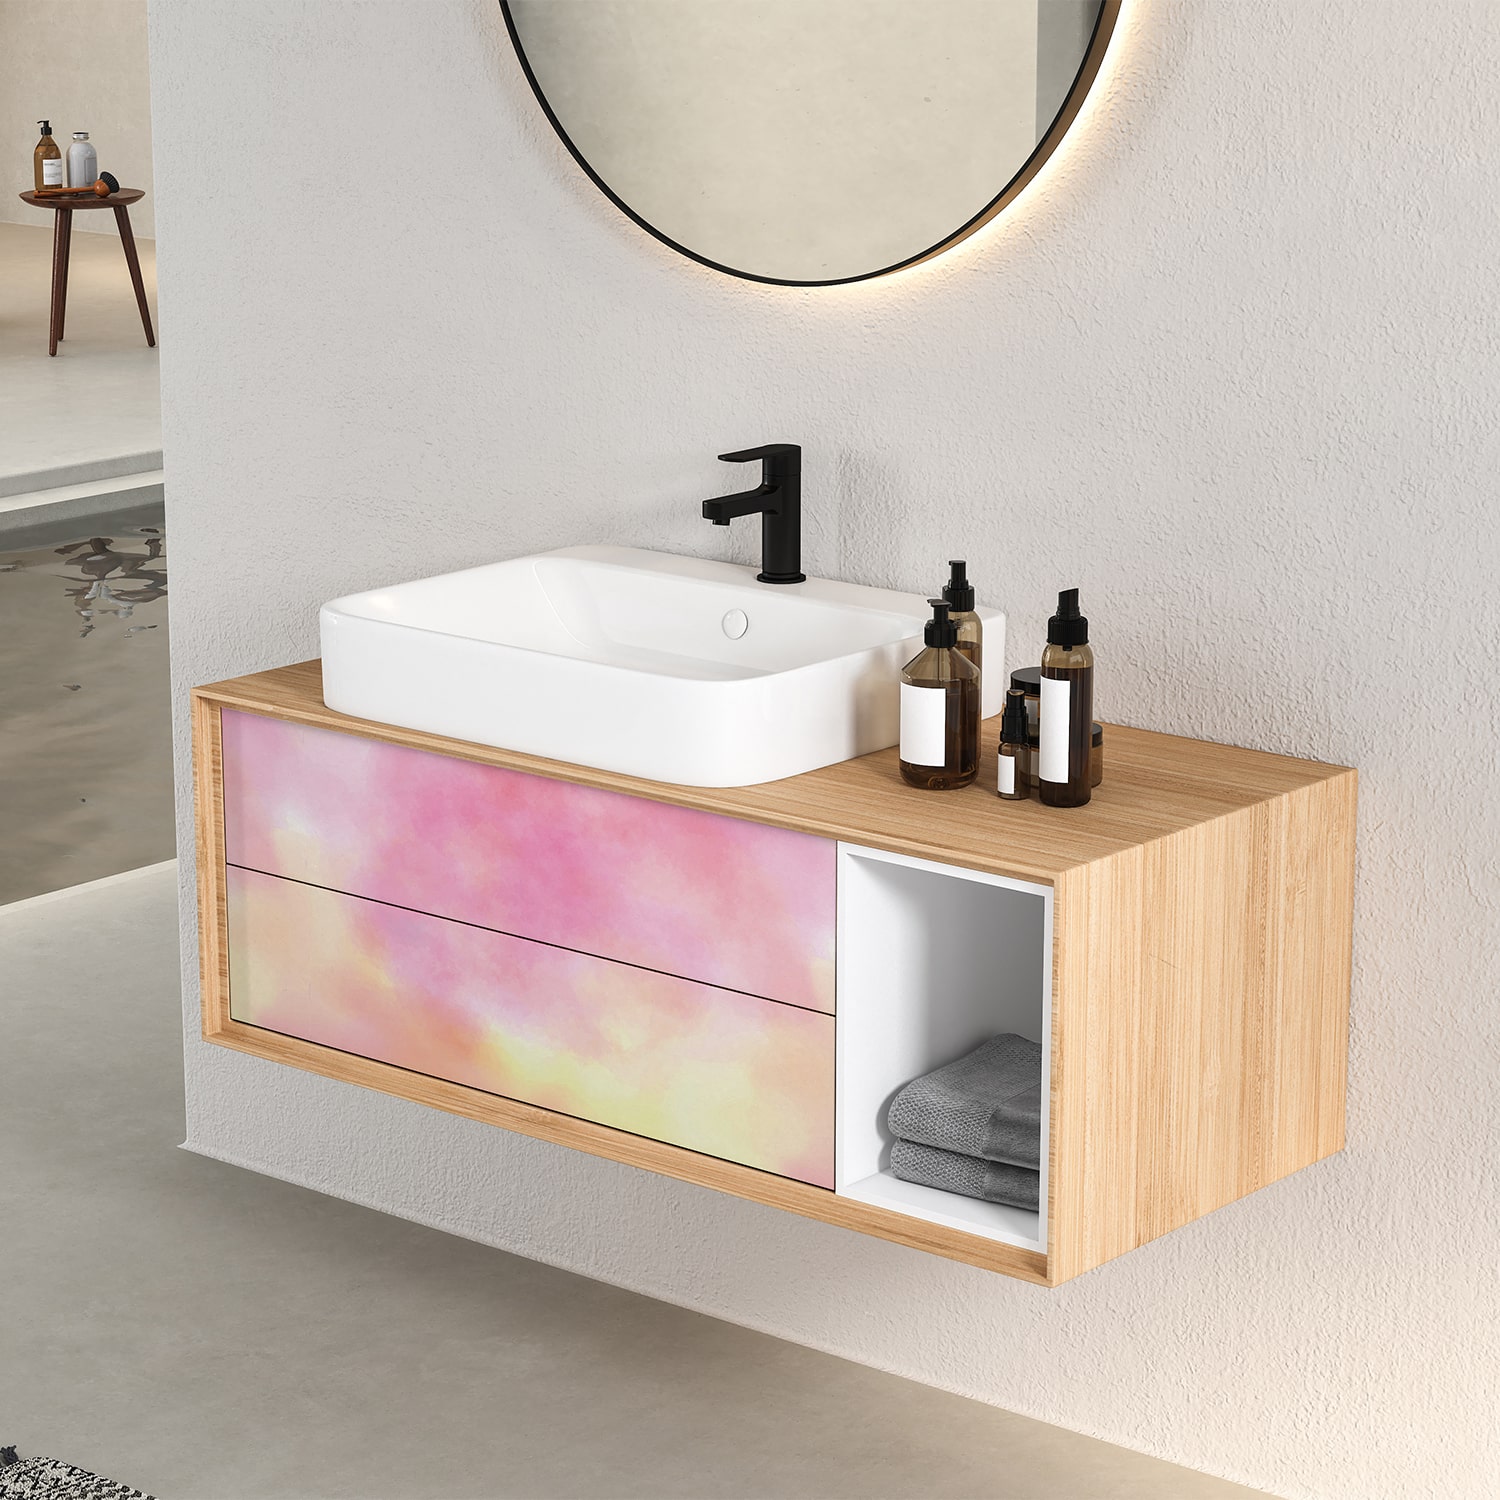 PP110-meuble-papier-peint-adhesif-decoratif-revetement-vinyle-motifs-dégradé-rose-soleil-renovation-meuble-mur-min